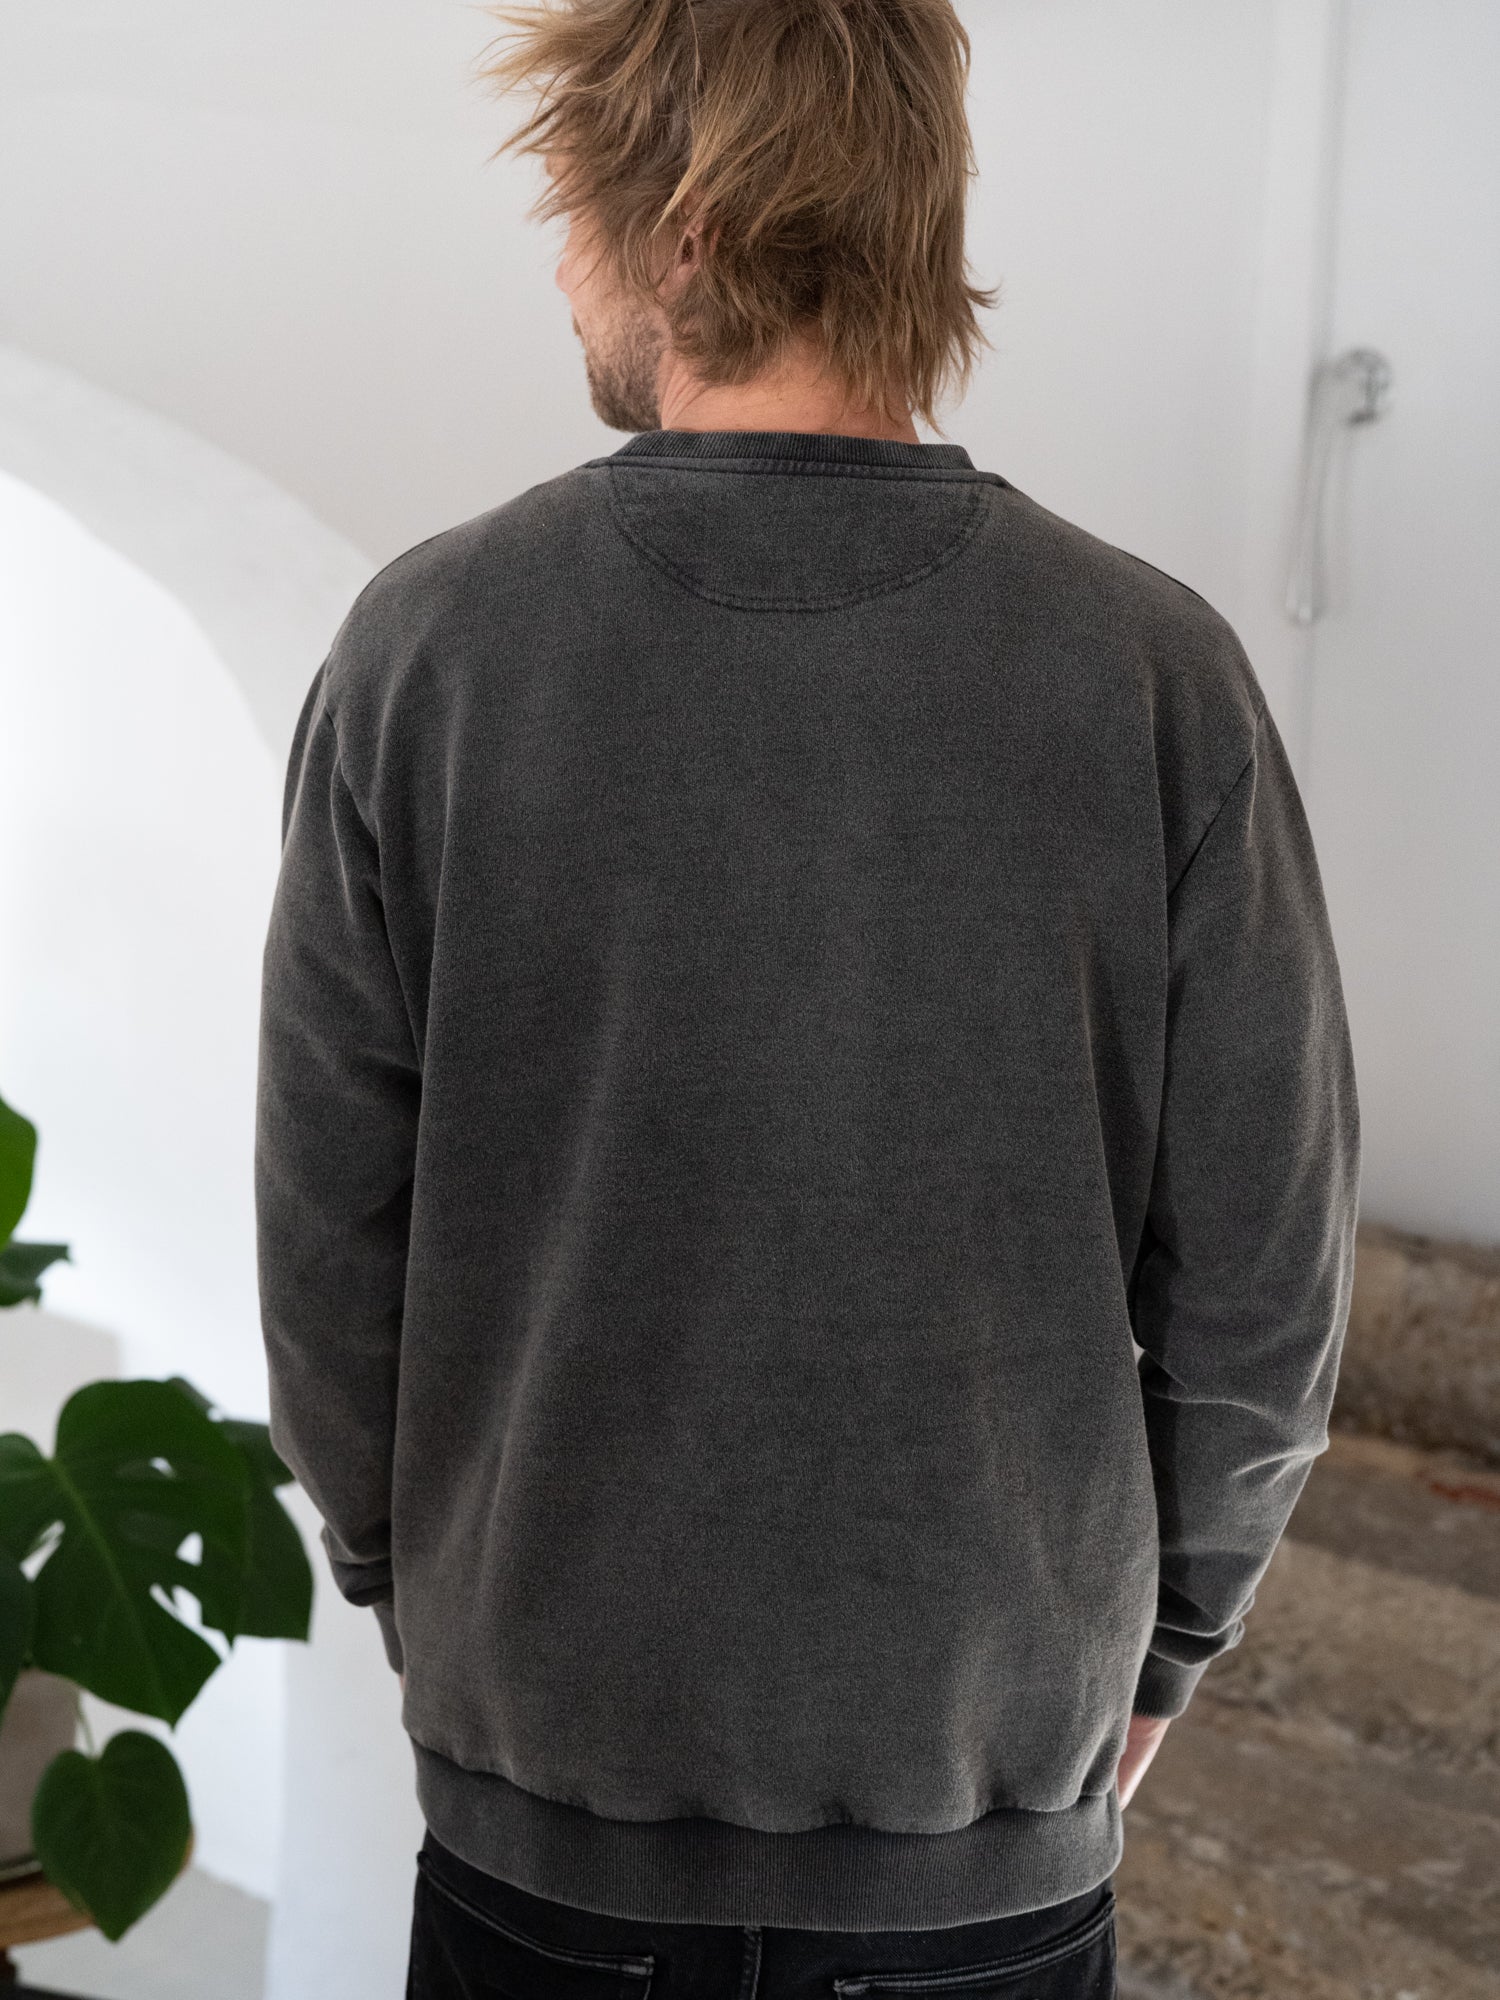 FUXBAU Männer Stay Salty Sweater in salzschwarz aus 100% Biobaumwolle aus unserer Artist Series mit Pia Himmelein.